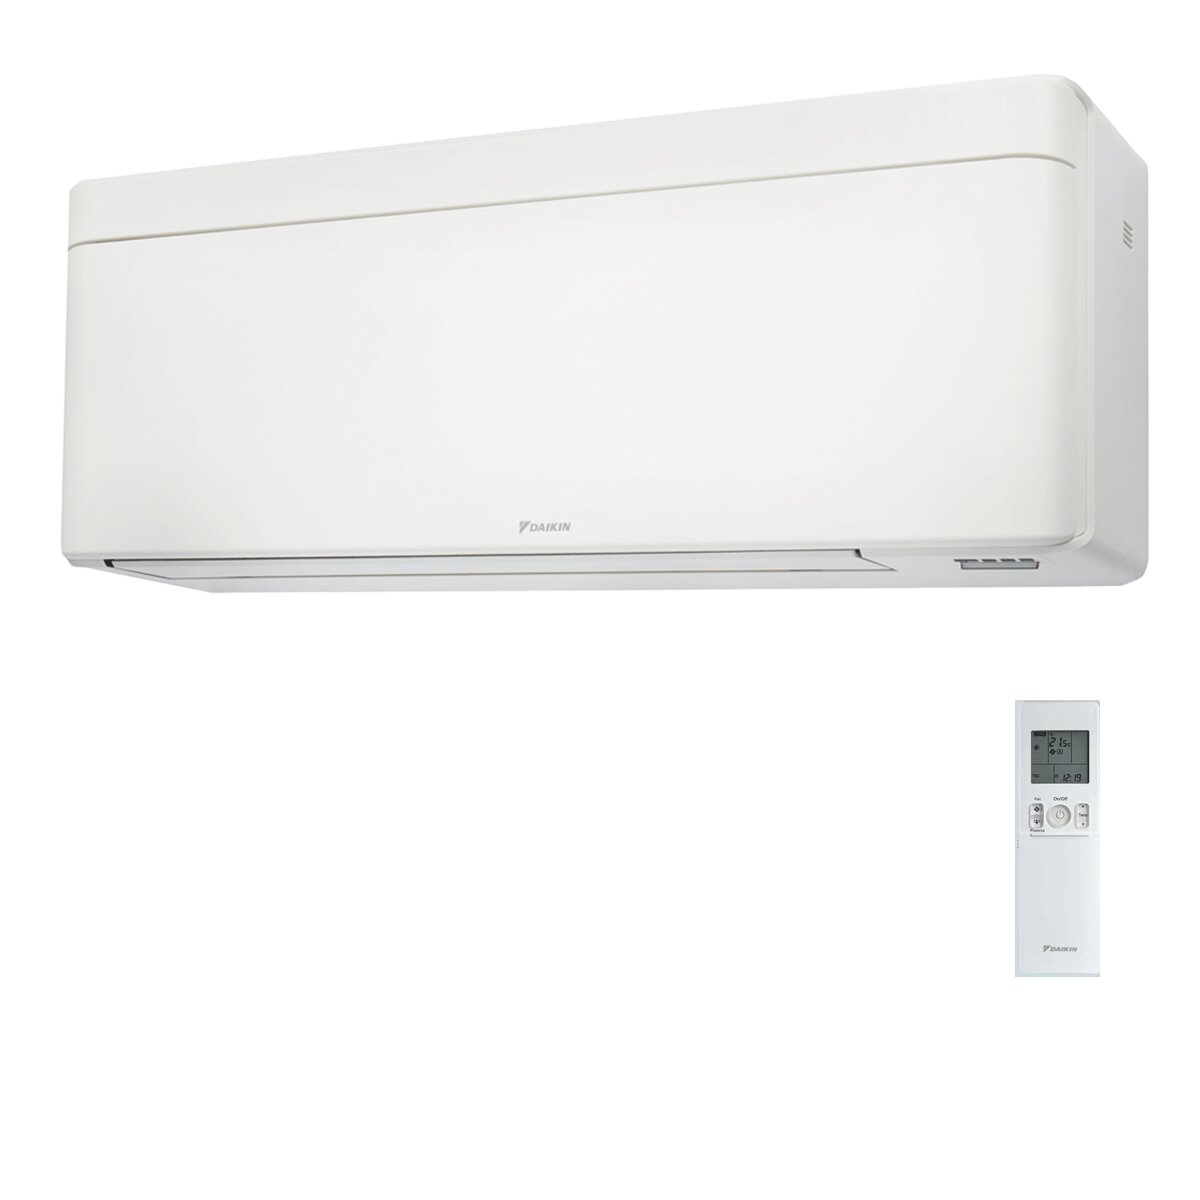 Daikin Stylish White trial split air conditioner 7000+7000+9000 BTU inverter A+++ wifi external unit 4 kW